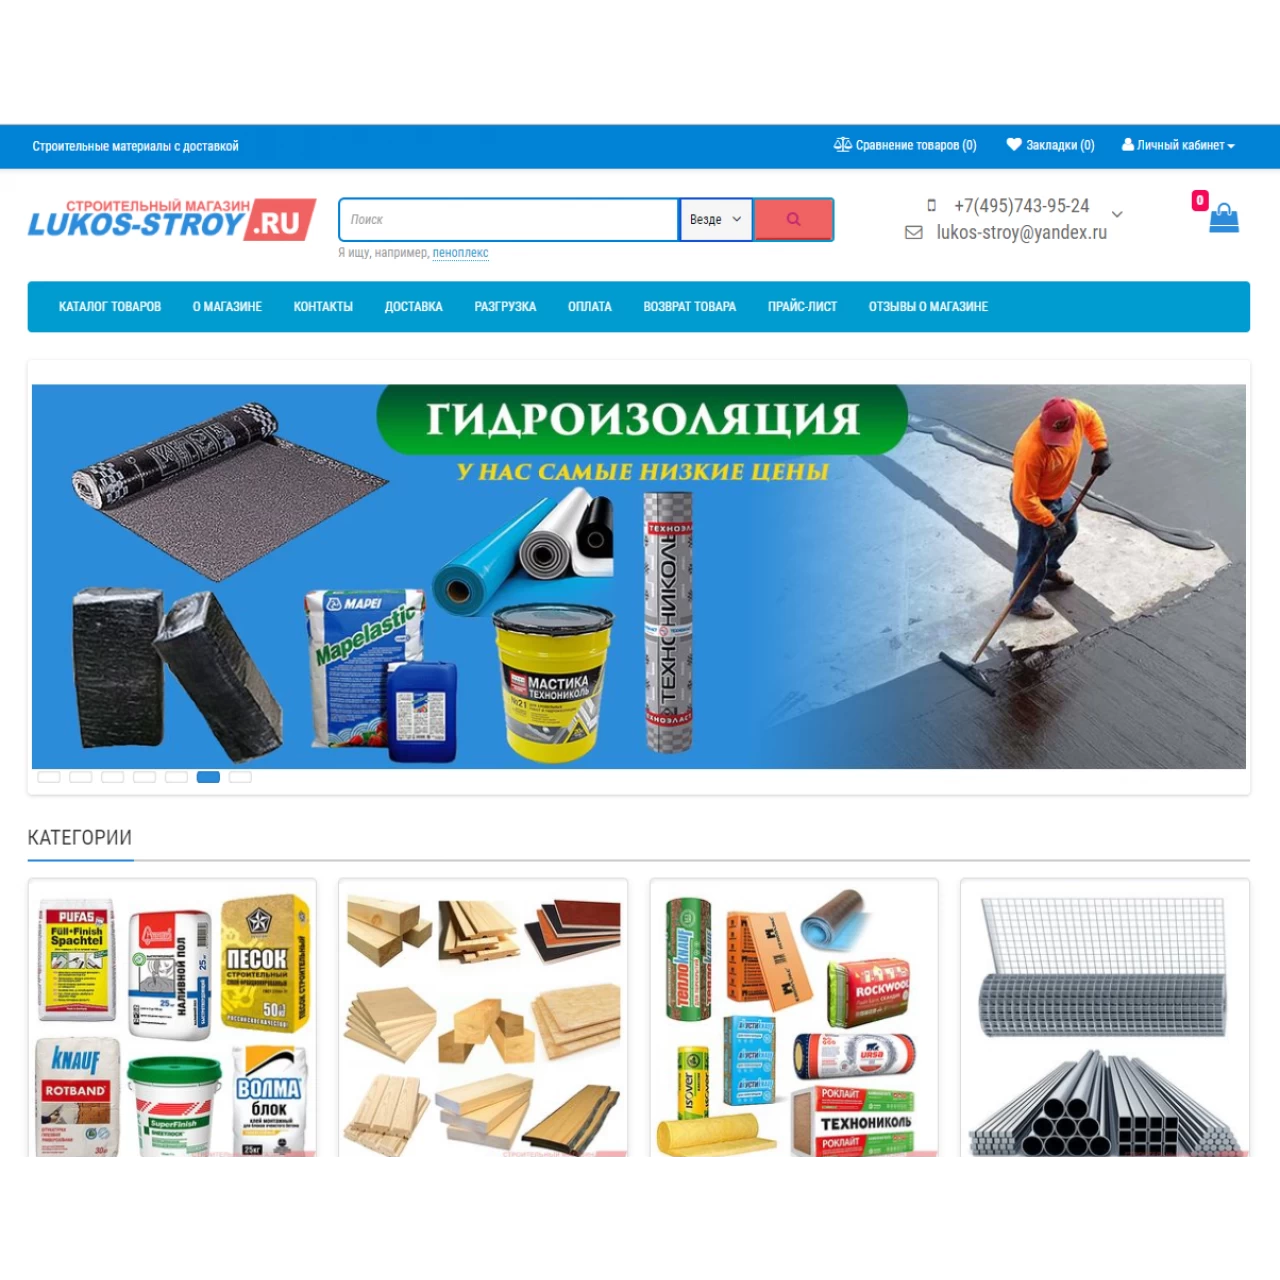 LUKOS-STROY - скрипт строительного интернет магазина